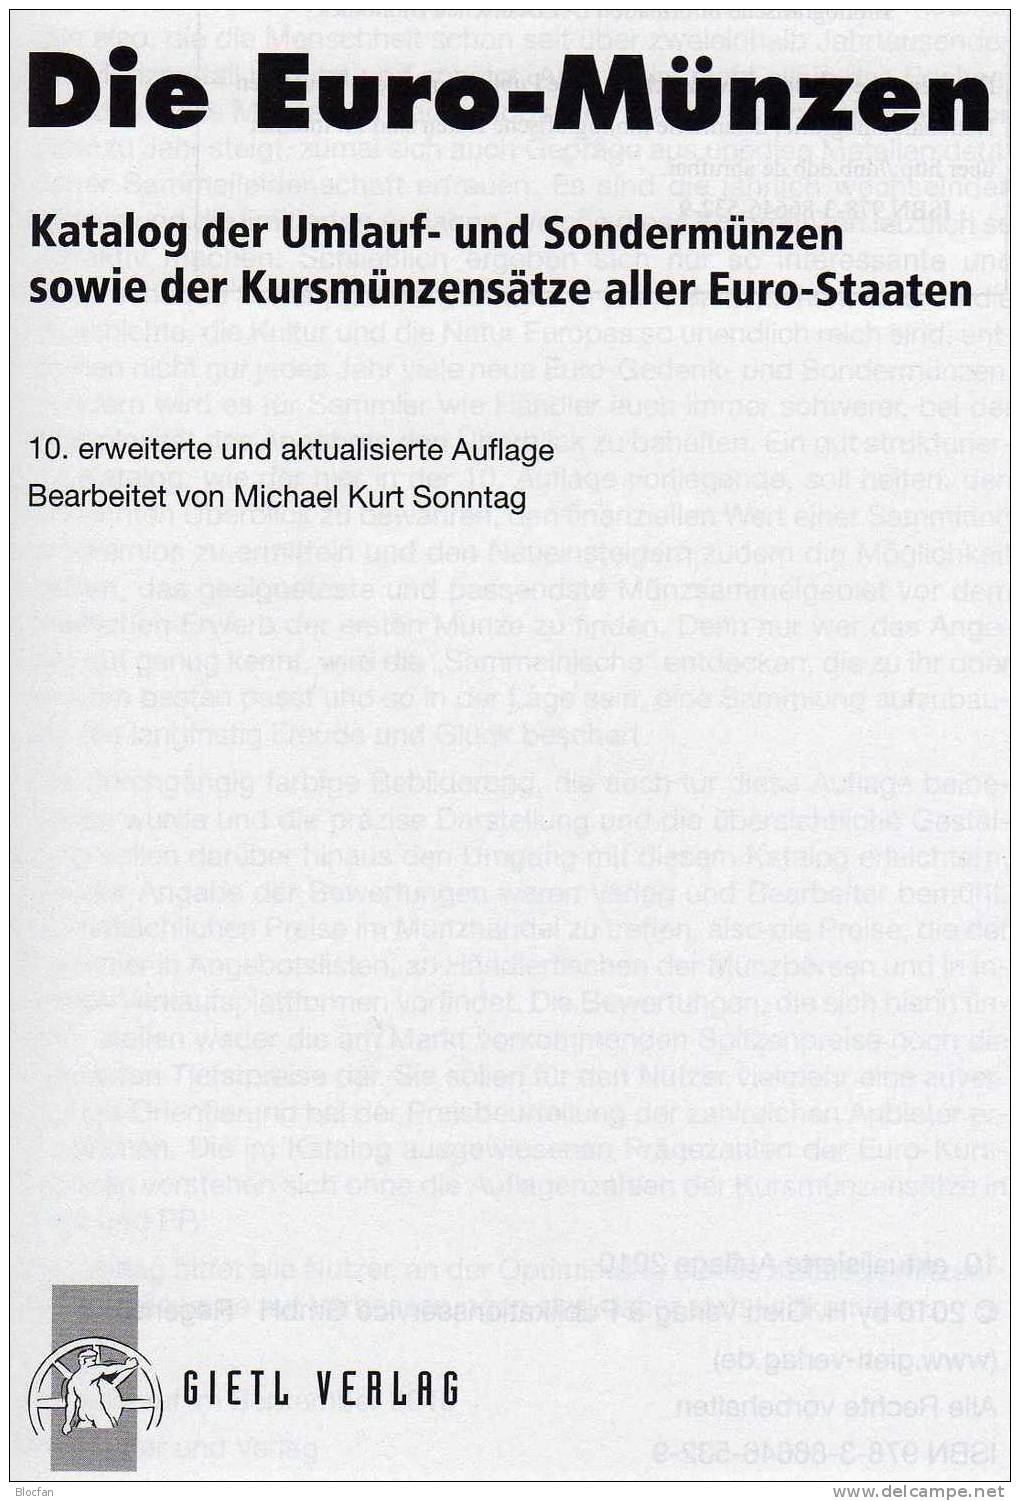 Die EURO-Münzen Katalog 2011 Neu 20€ Deutschland Und Euroländer Für Numis-Briefe, Numisblätter Neueste Auflage Von Gietl - Usati